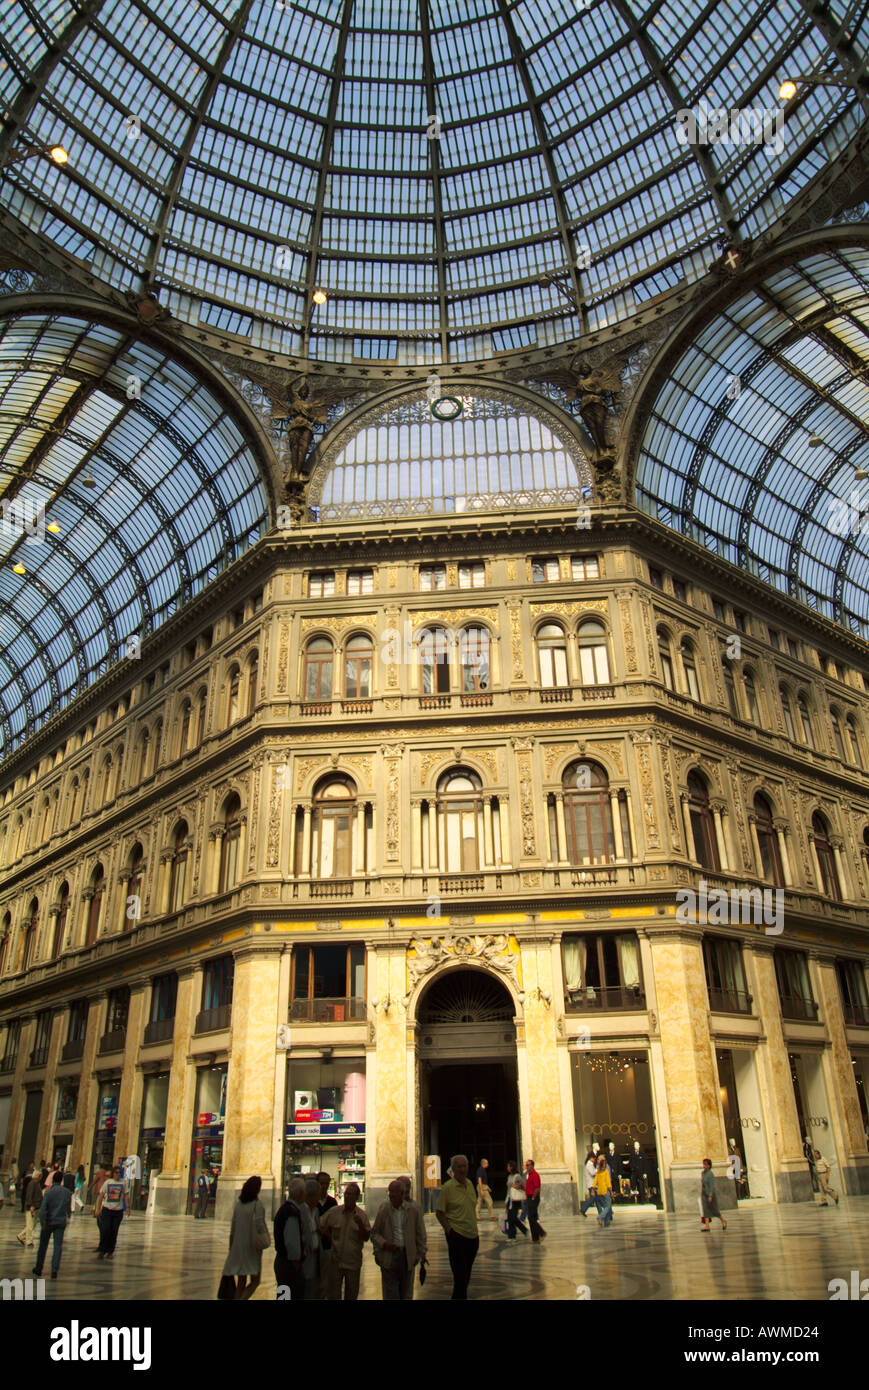 Personnes dans une galerie commerçante, Galleria Umberto I, Naples, Campanie, Italie Banque D'Images